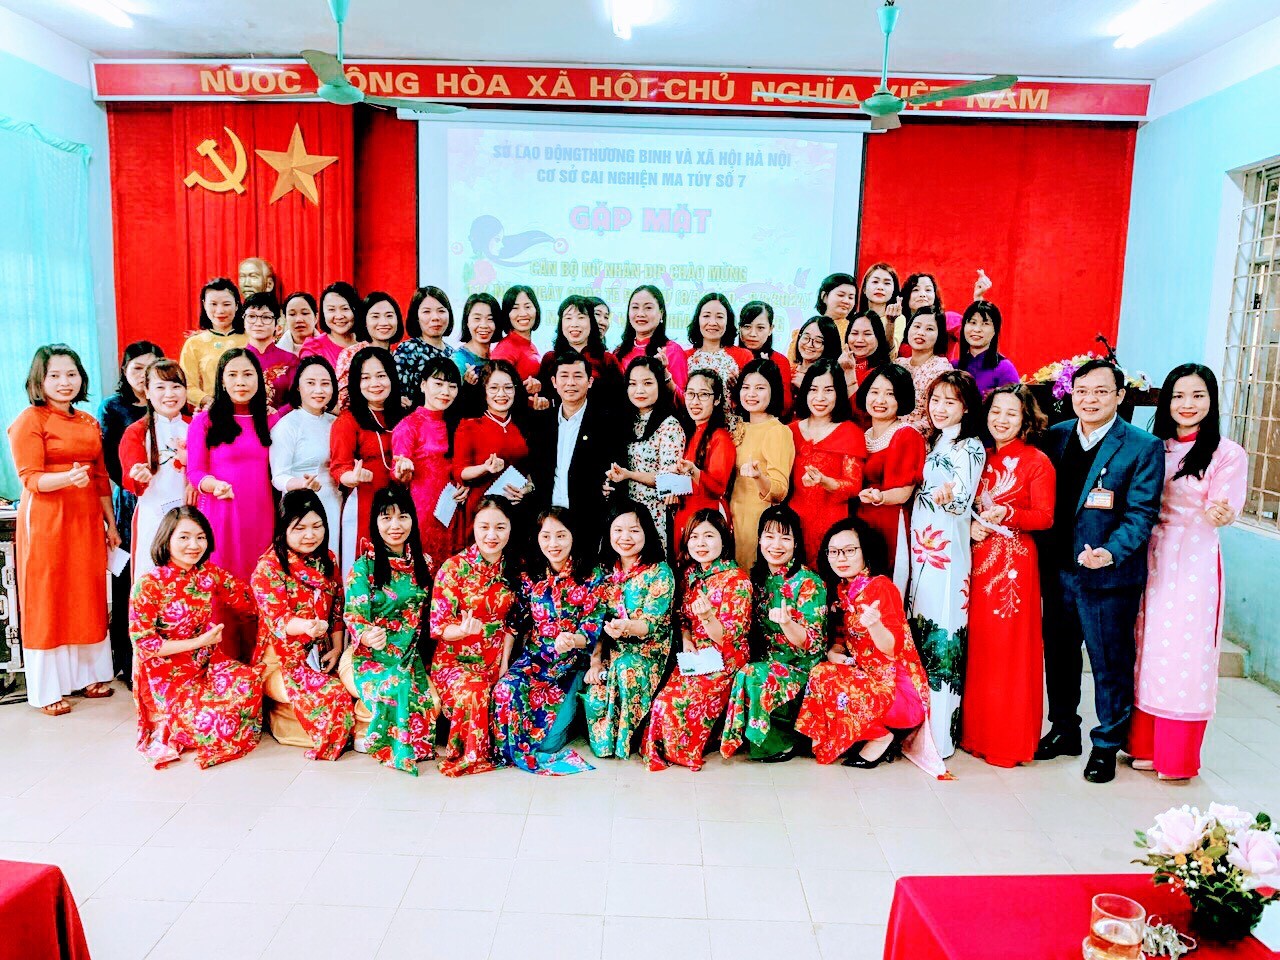 Ban Nữ công Cơ sở cai nghiện ma túy số 7 Hà Nội  tổ chức buổi gặp mặt, ôn lại truyền thống 114 năm ngày Quốc tế Phụ nữ 08/3 (08/3/1910-08/3/2024) và 1984 năm ngày khởi nghĩa Hai Bà Trưng